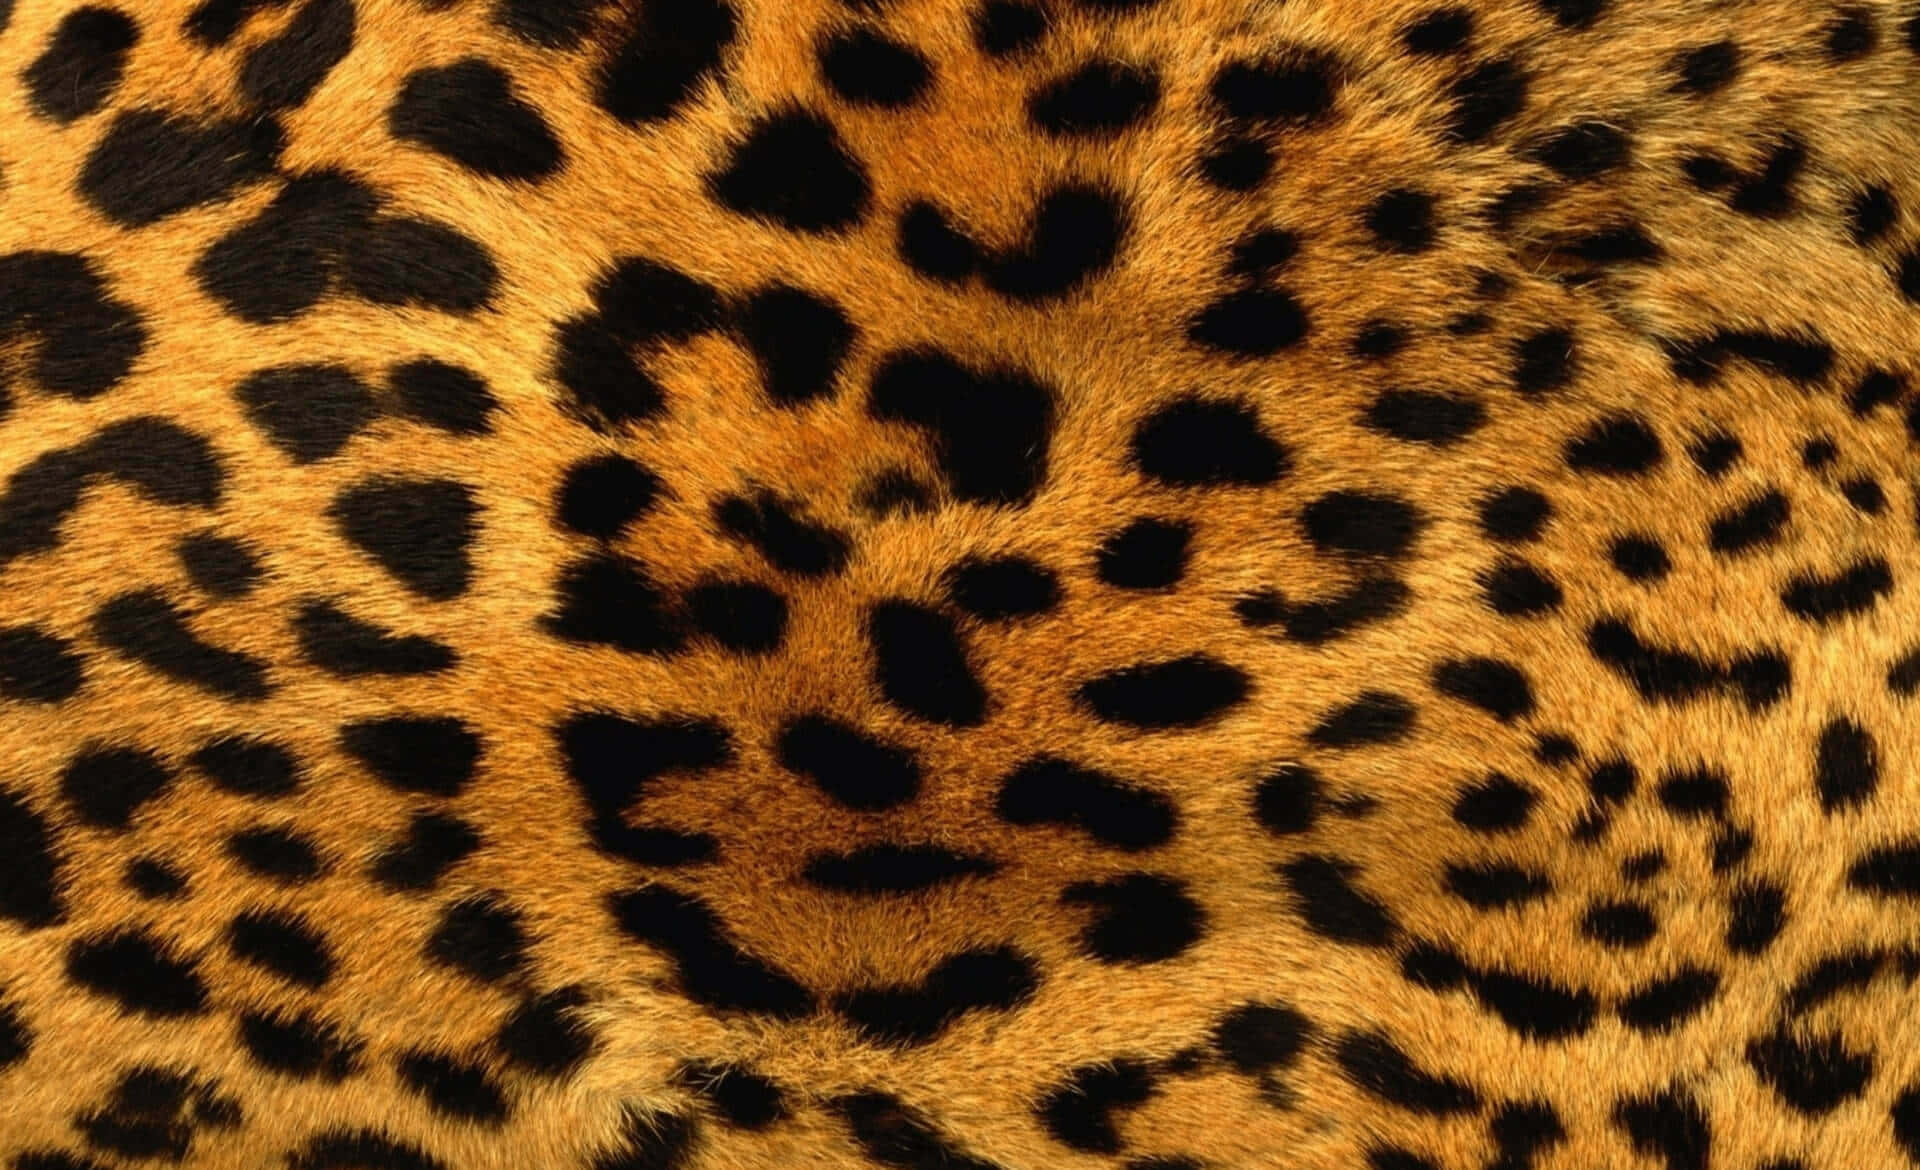 Pin by SUBLI+CRESPO on barbijos | Animal print wallpaper, Cheetah print  wallpaper, Leopard print wallpaper